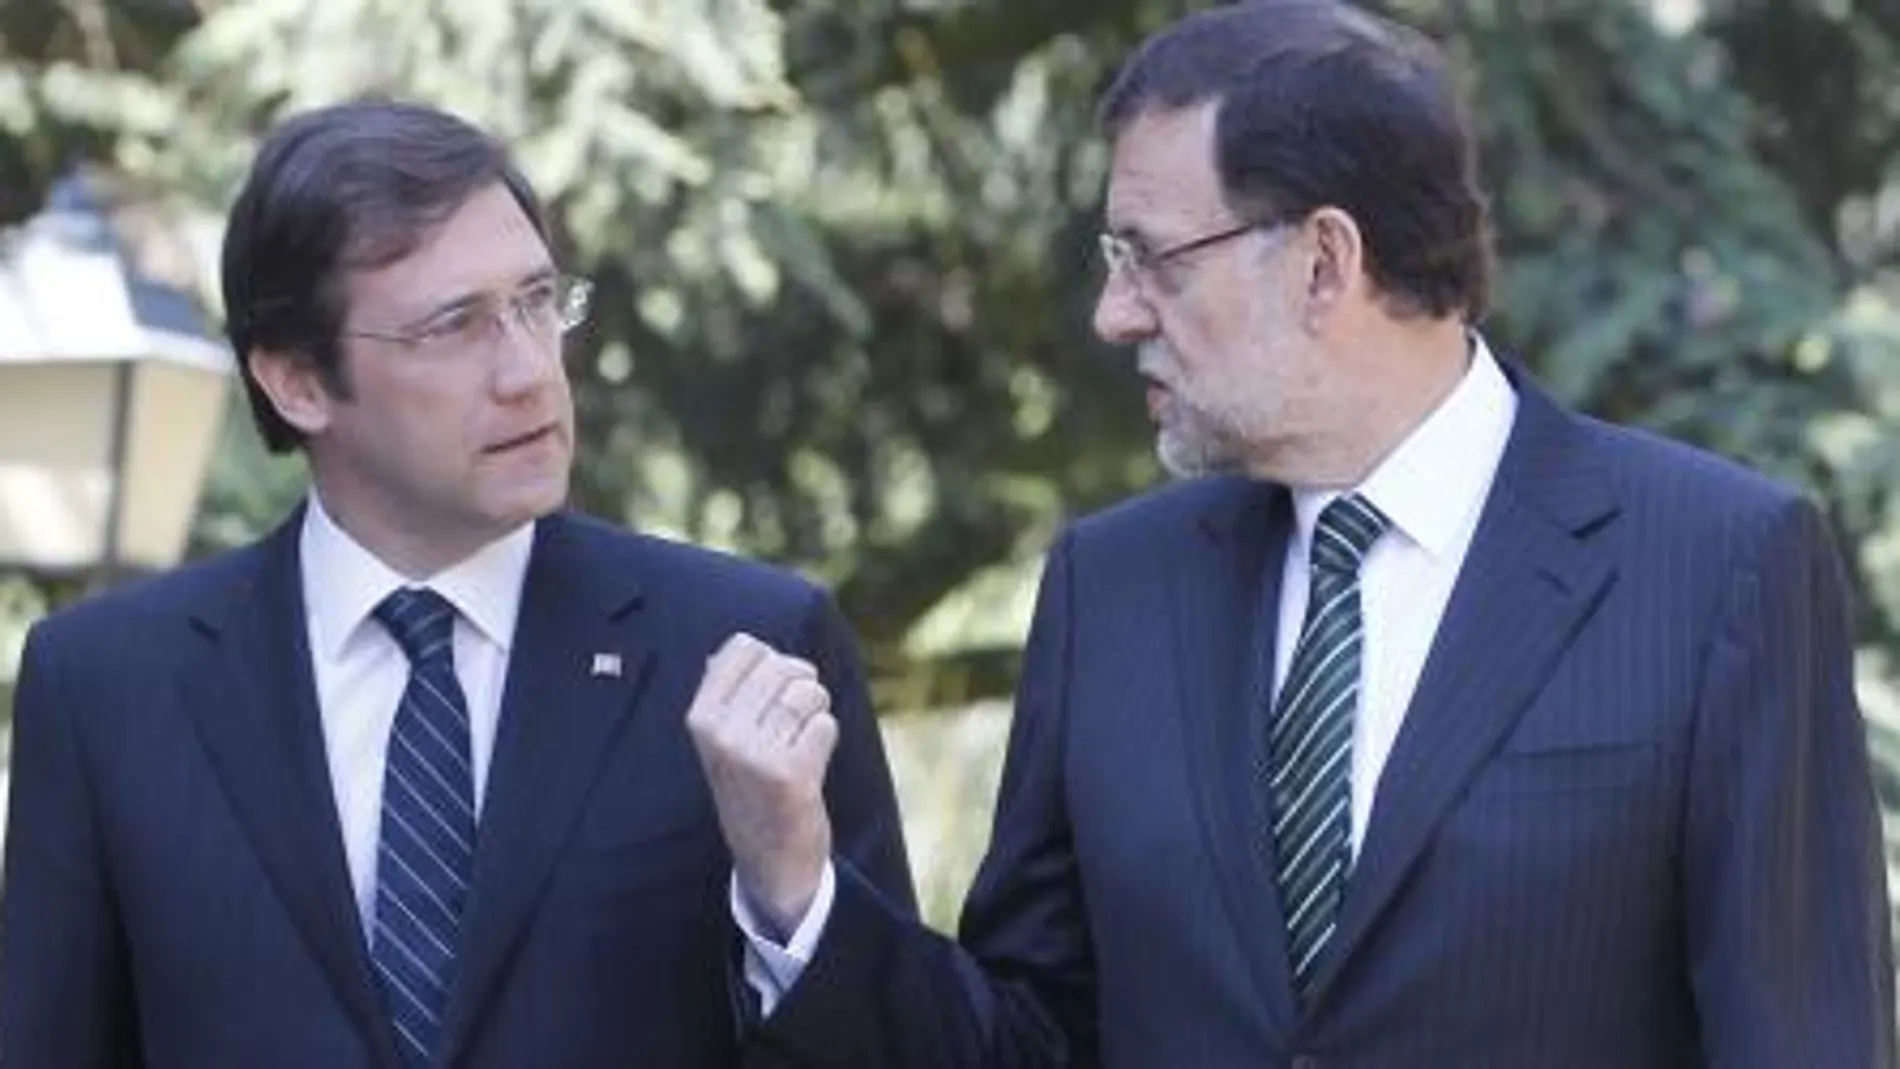 Passos Coelho y Rajoy, en un encuentro mantenido en La Moncloa el pasado año.